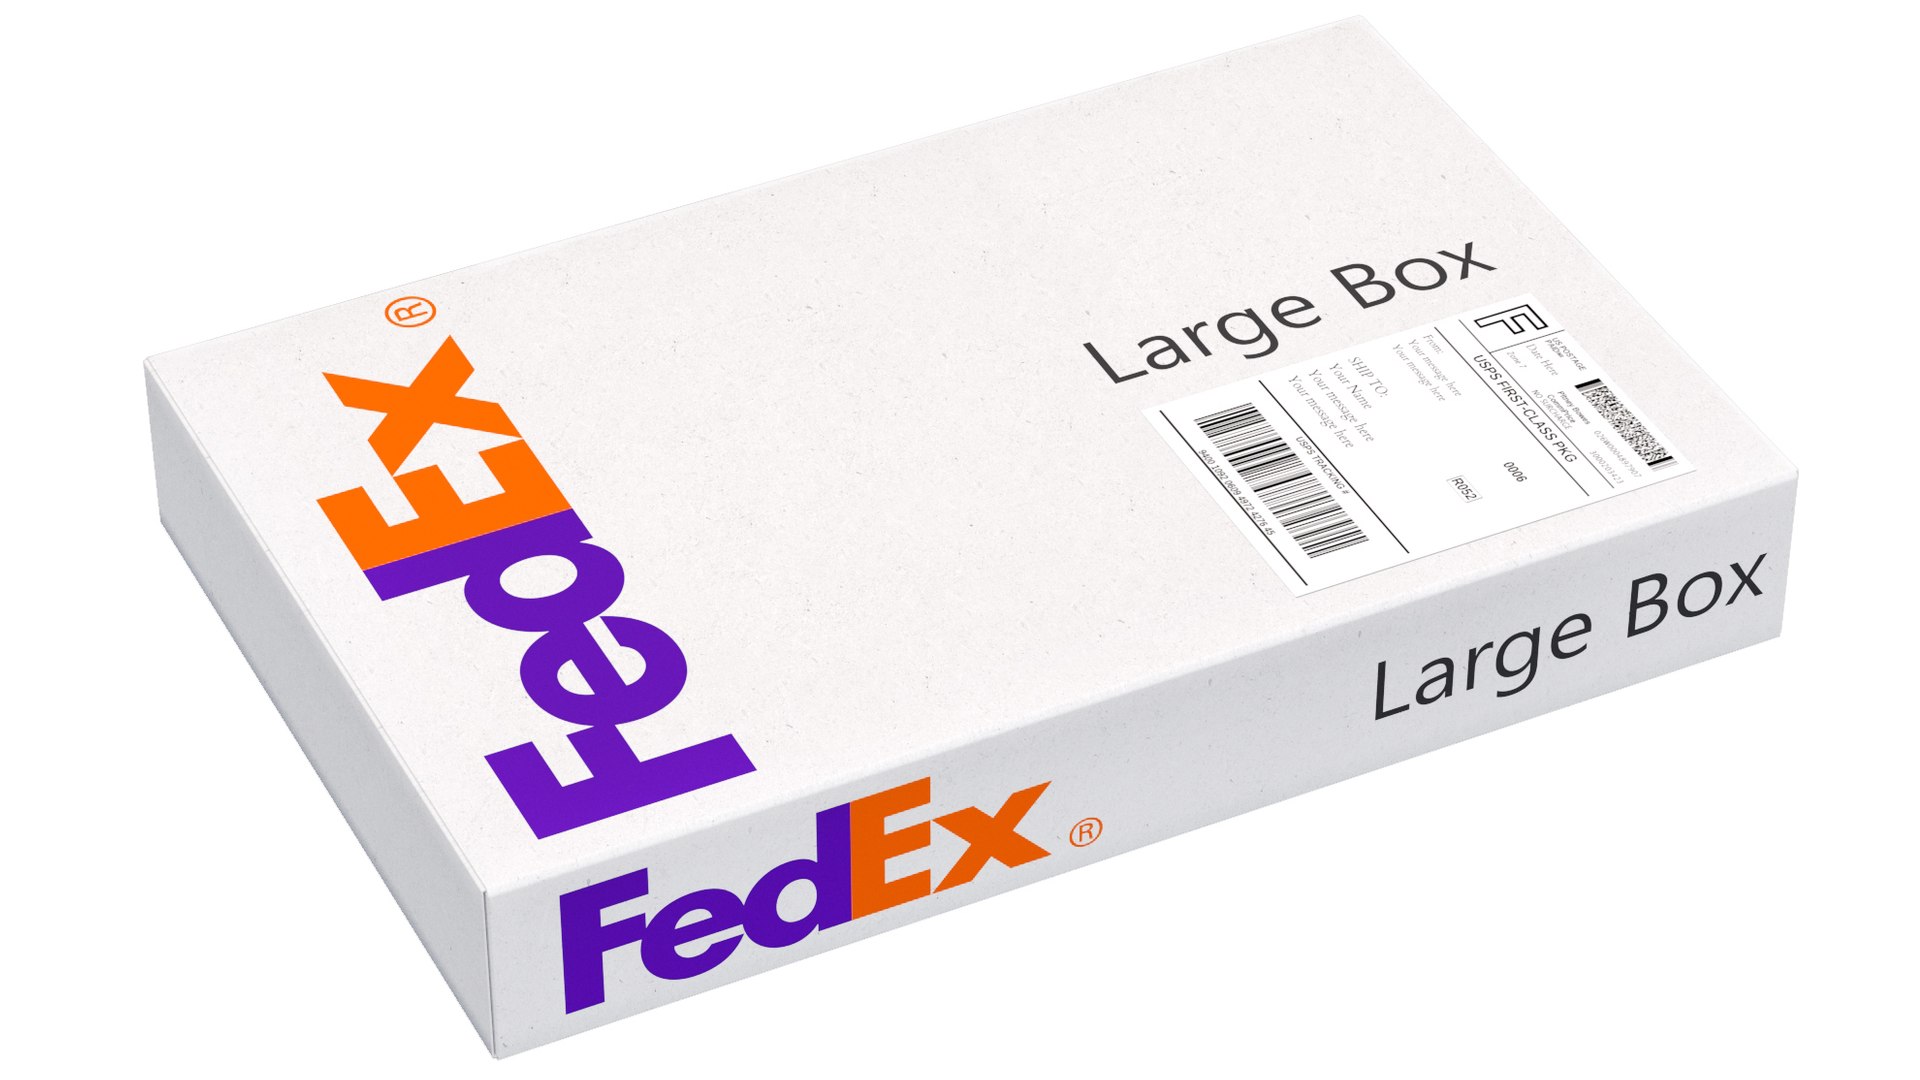 3D Cardboard Box Fedex - TurboSquid 1991814